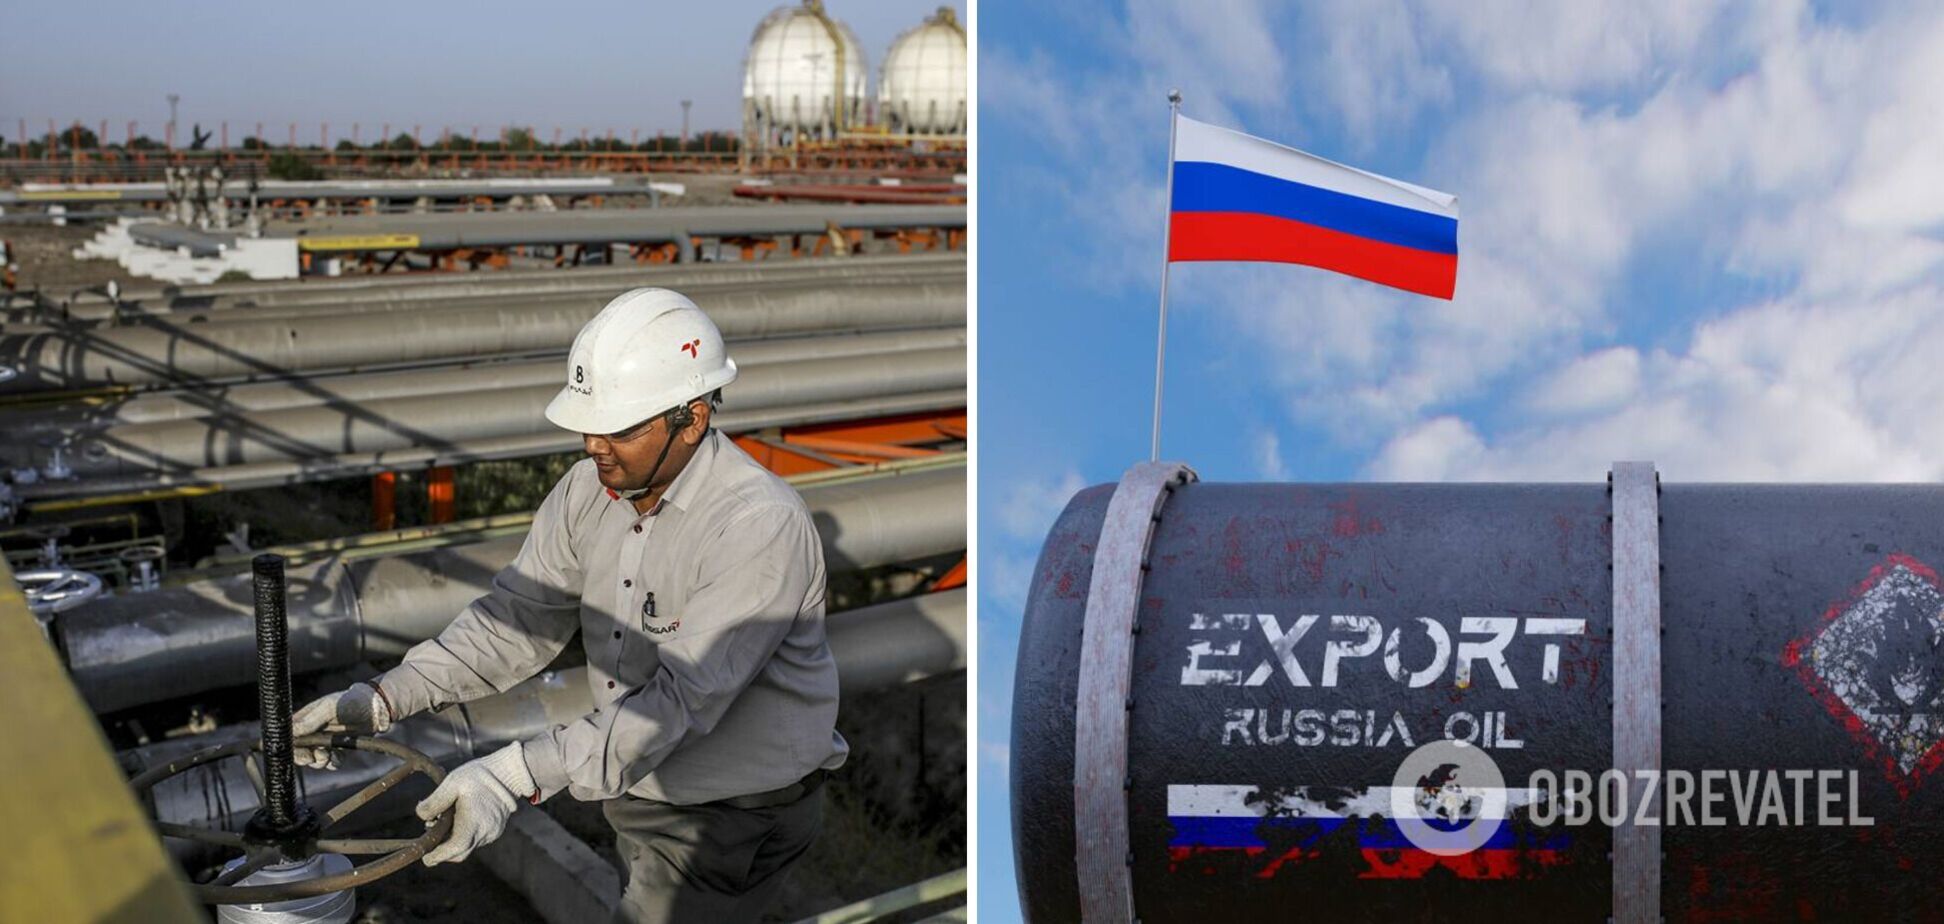 Сінгапур допомагає Росії продавати нафту